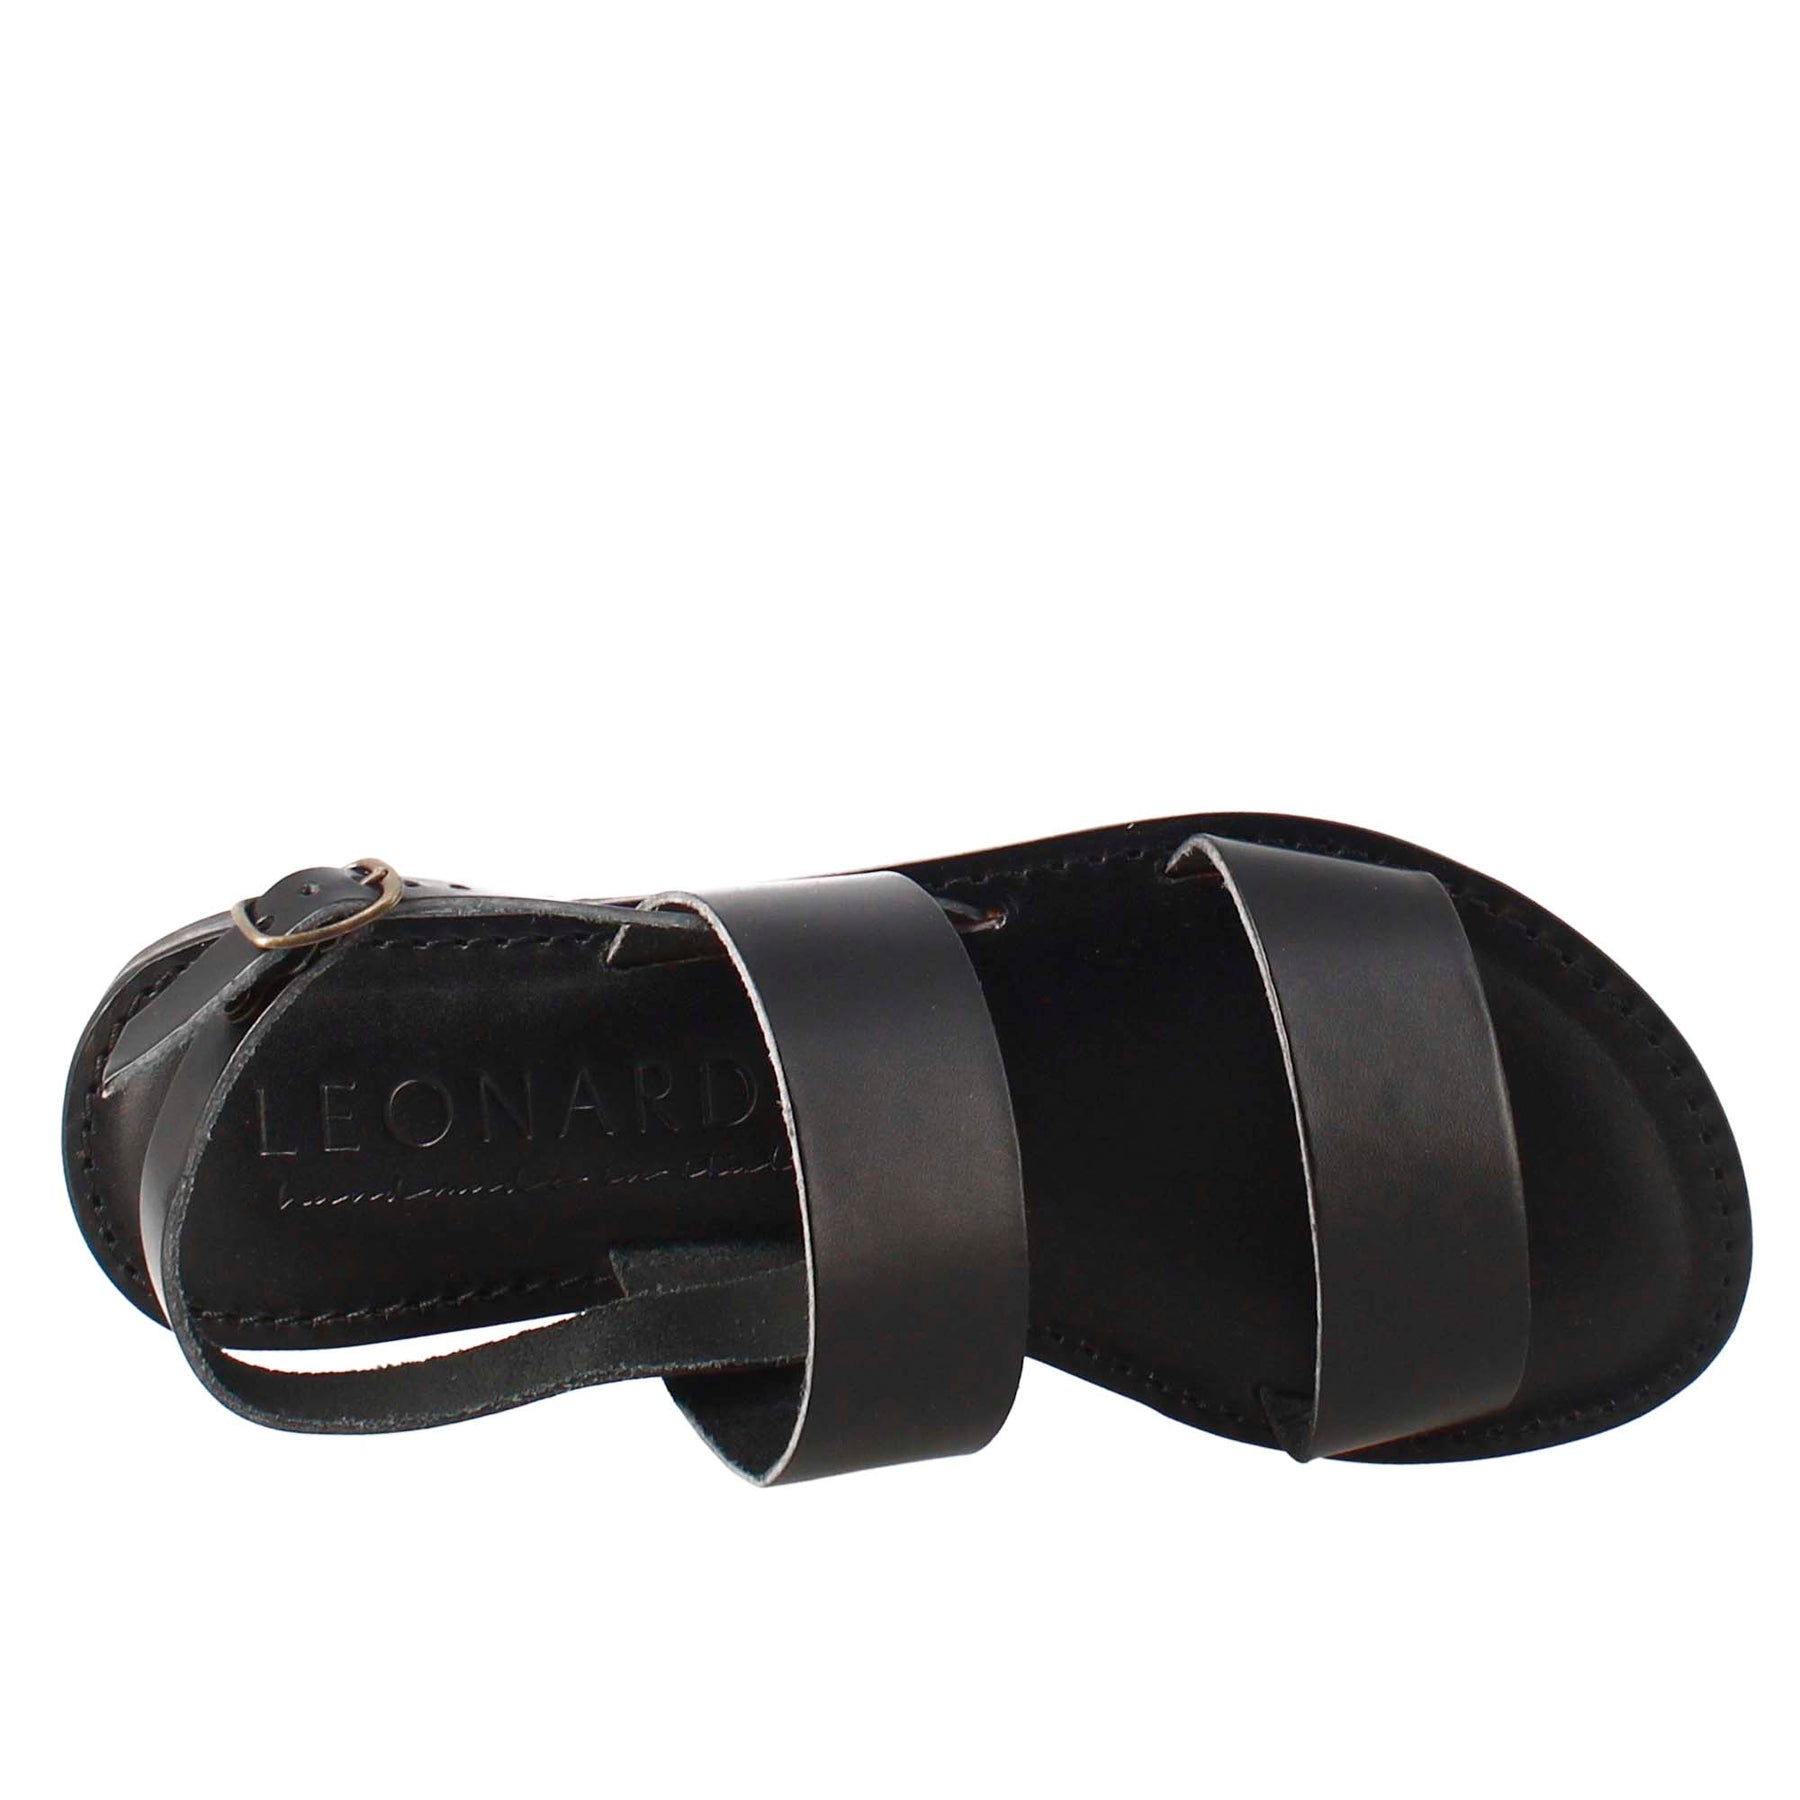 Sandales pour femmes Euforia de style romain antique en cuir noir